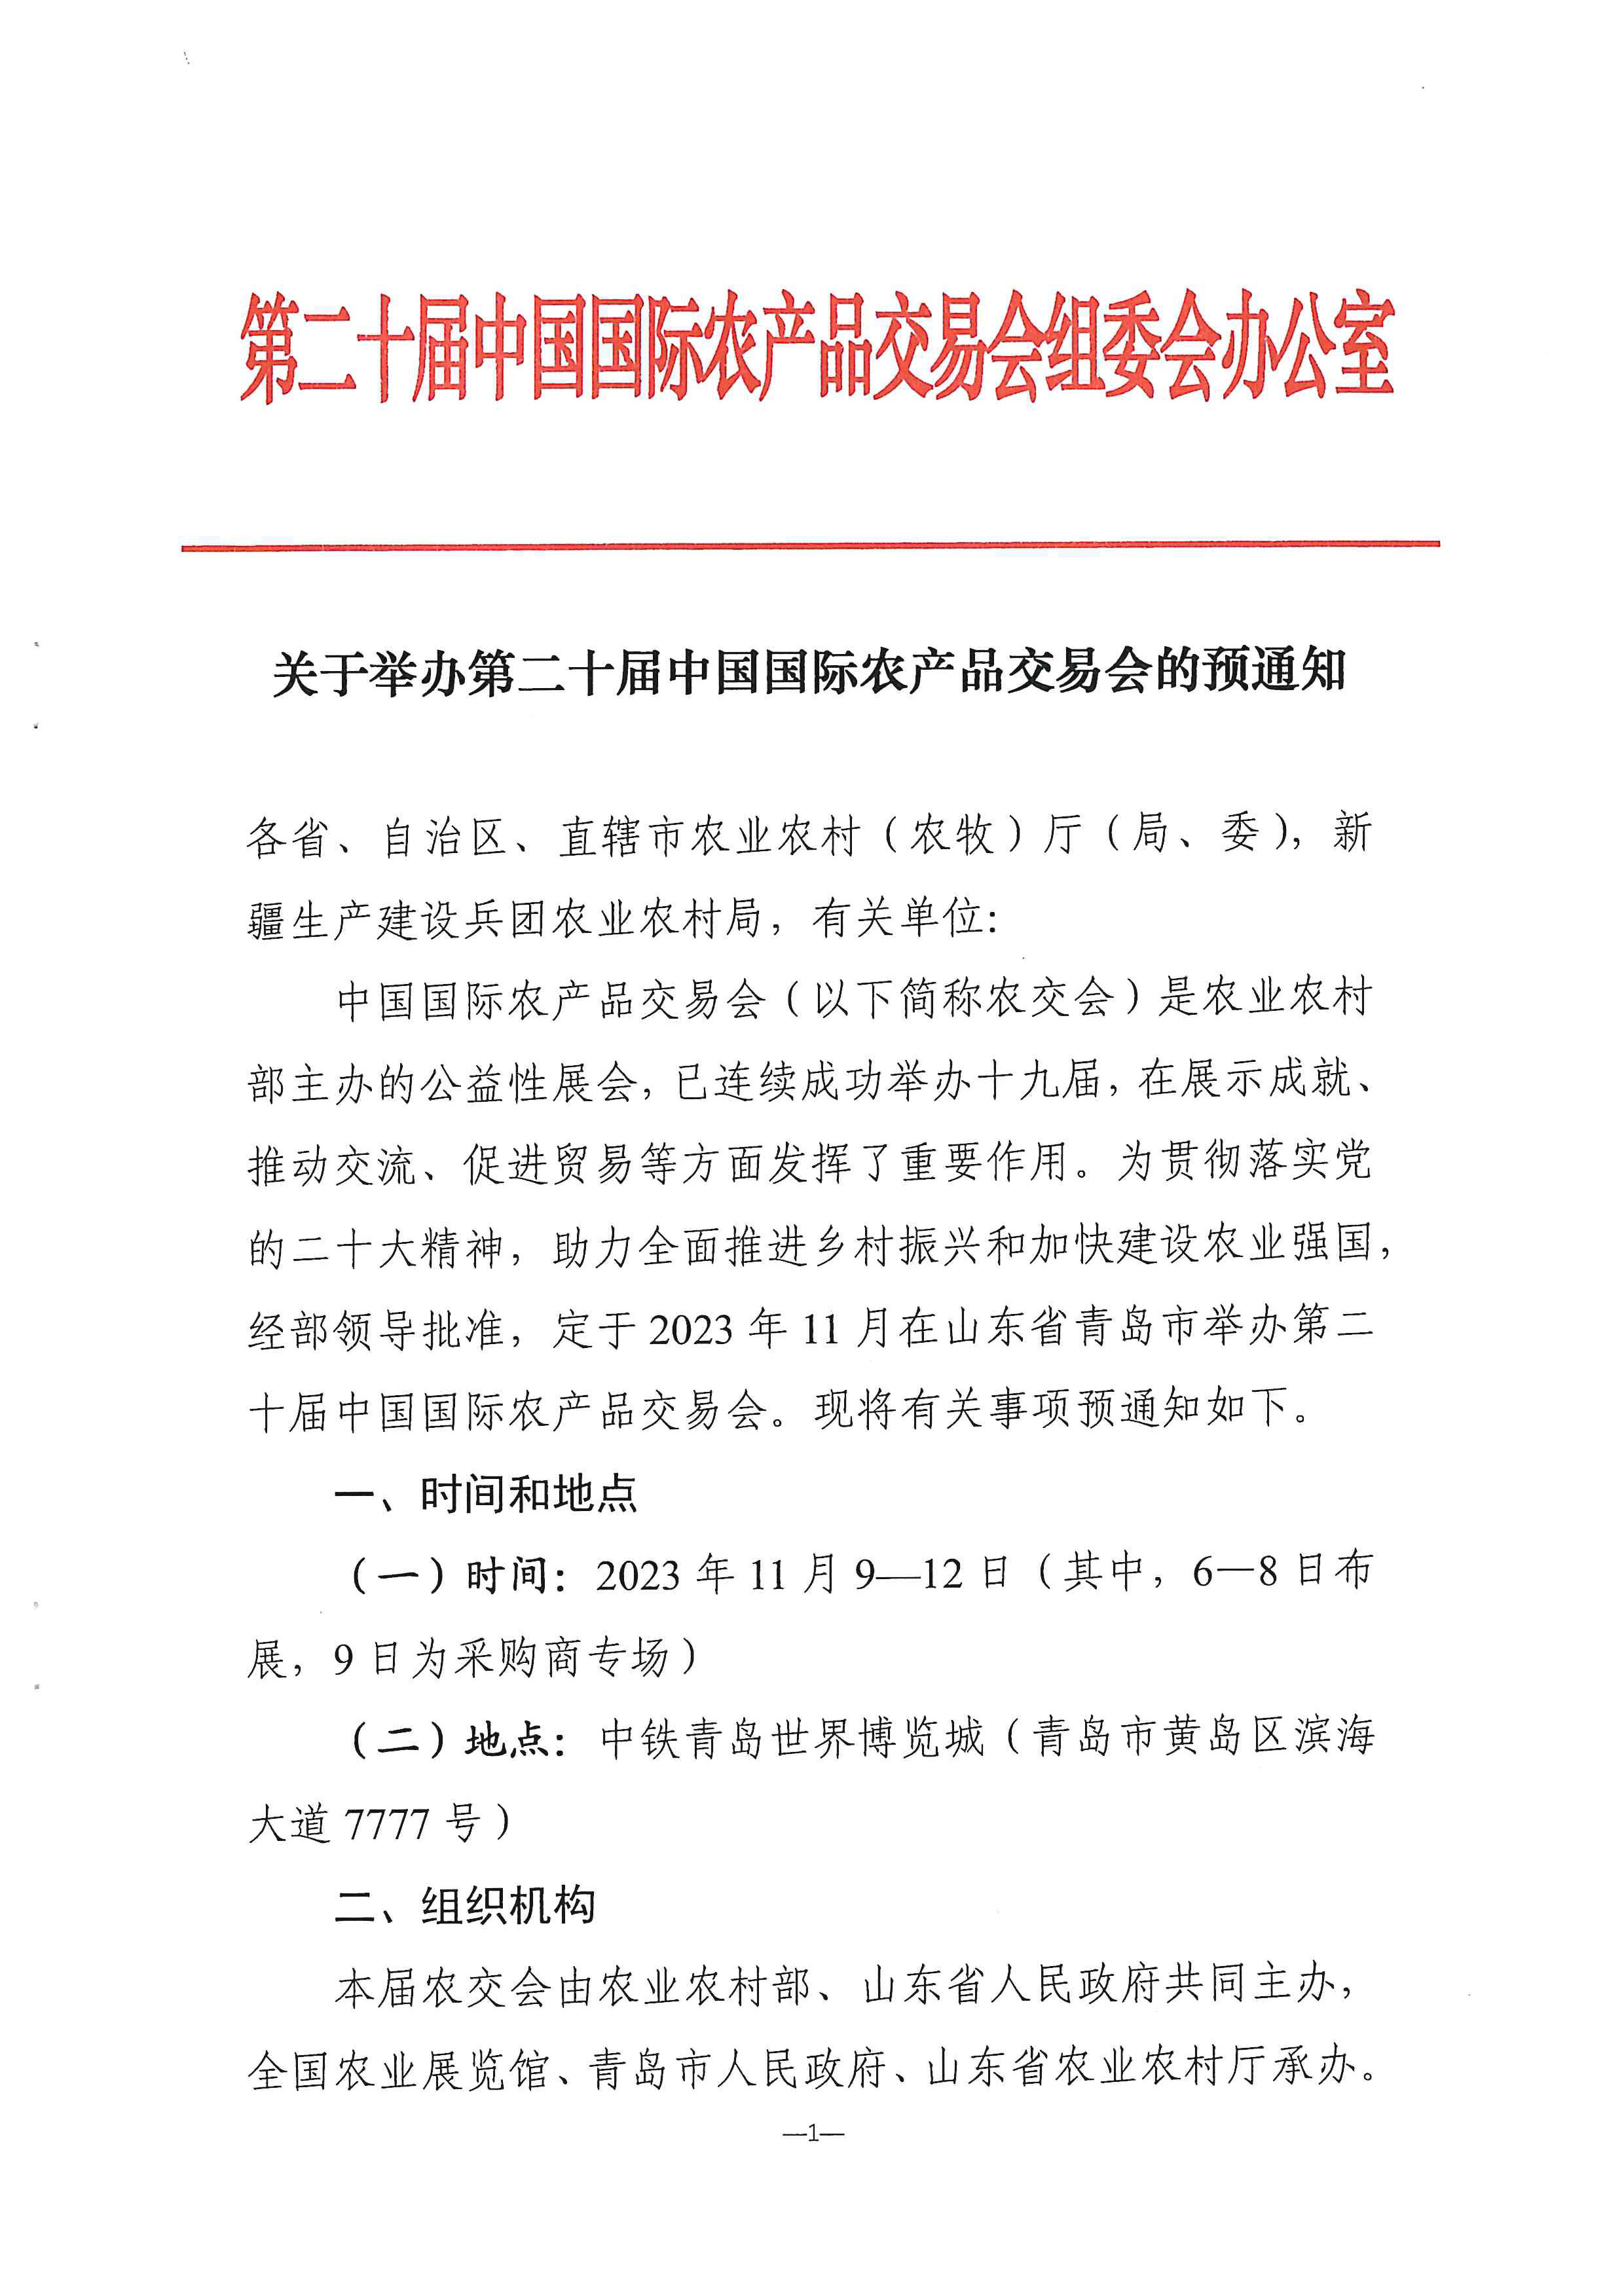 关于举办第二十届中国国际农产品交易会的预通知(3)_页面_1.jpg